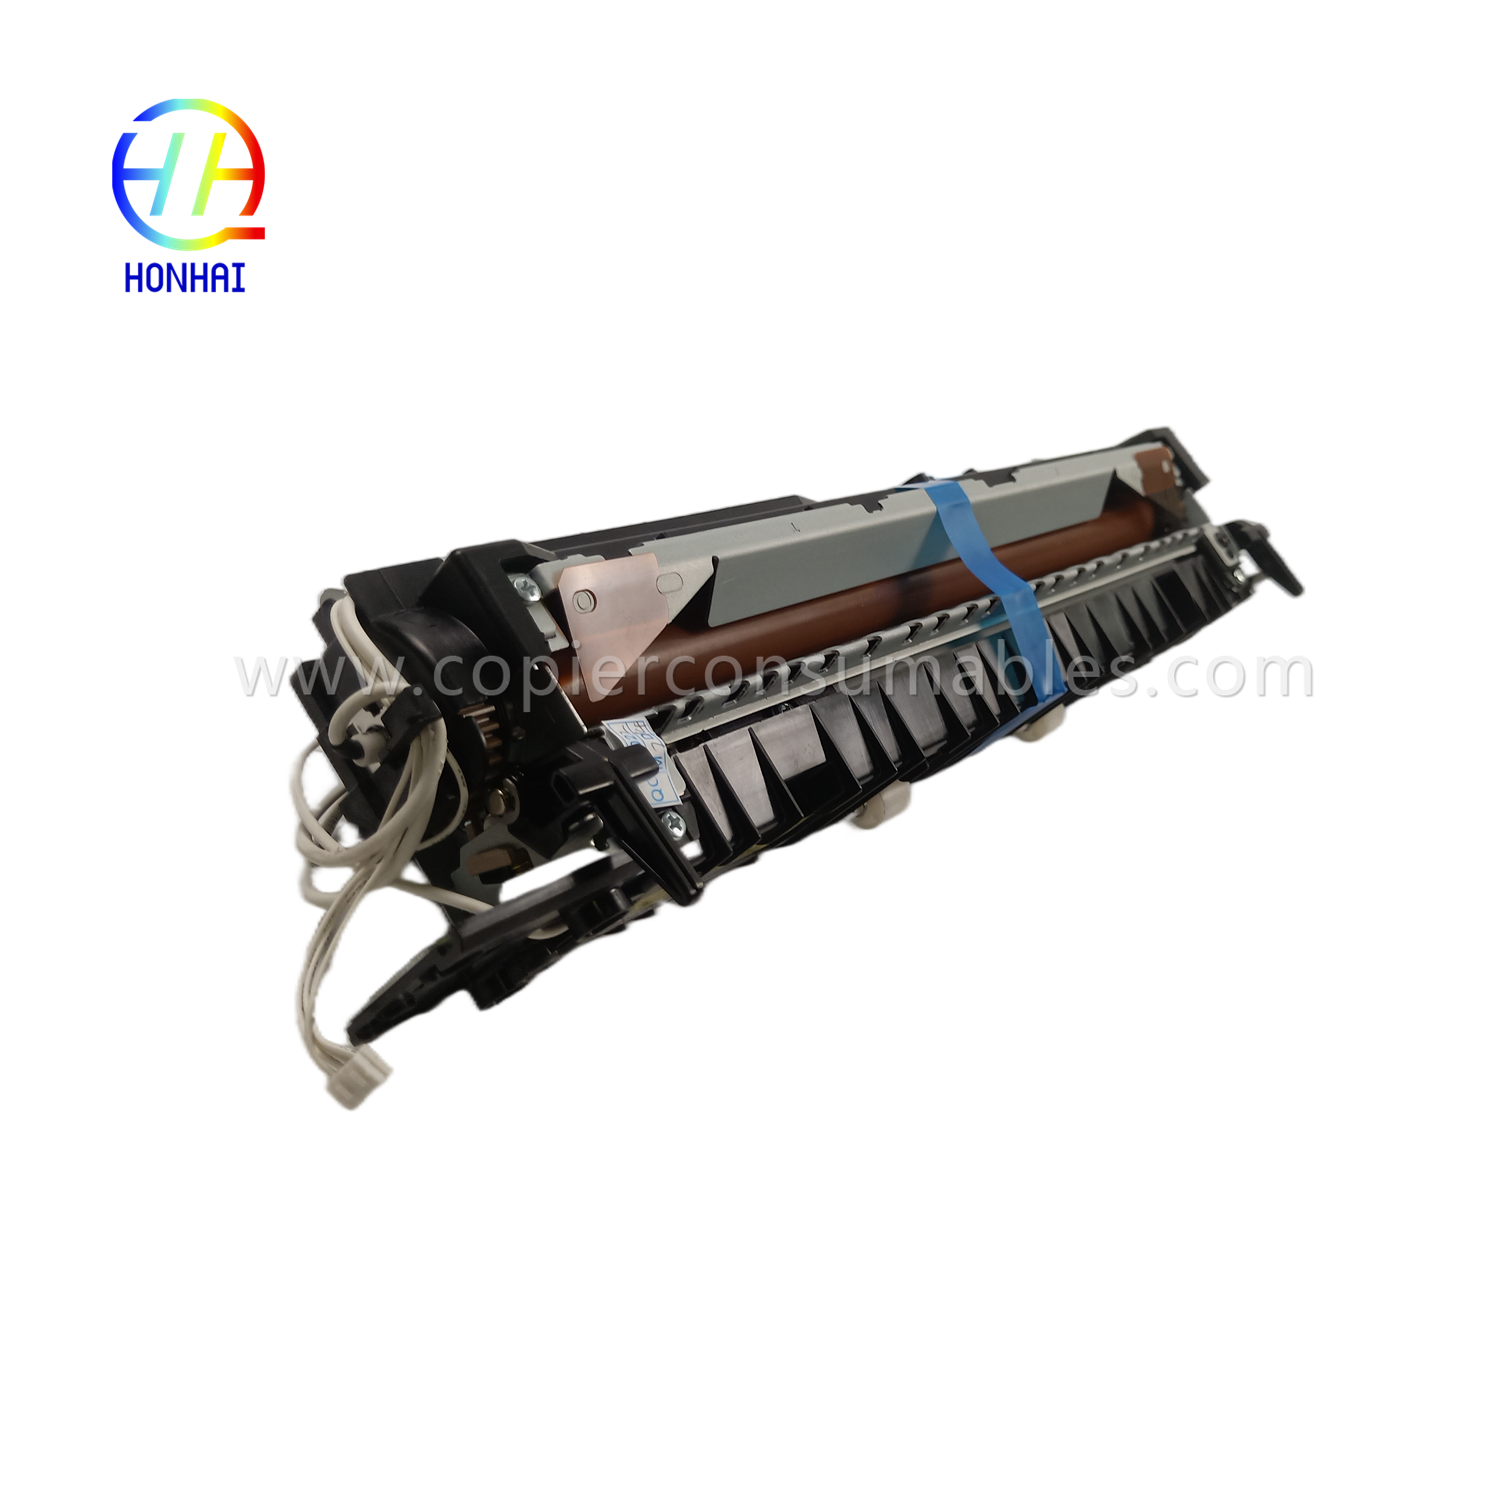 https://www.copierhonhaitech.com/fuser-unit-for-samsung-jc91-01163a-4250-4350-k4250-k4350-k4250rx-k4350lx-k4250lx-fuser-assembly-product/